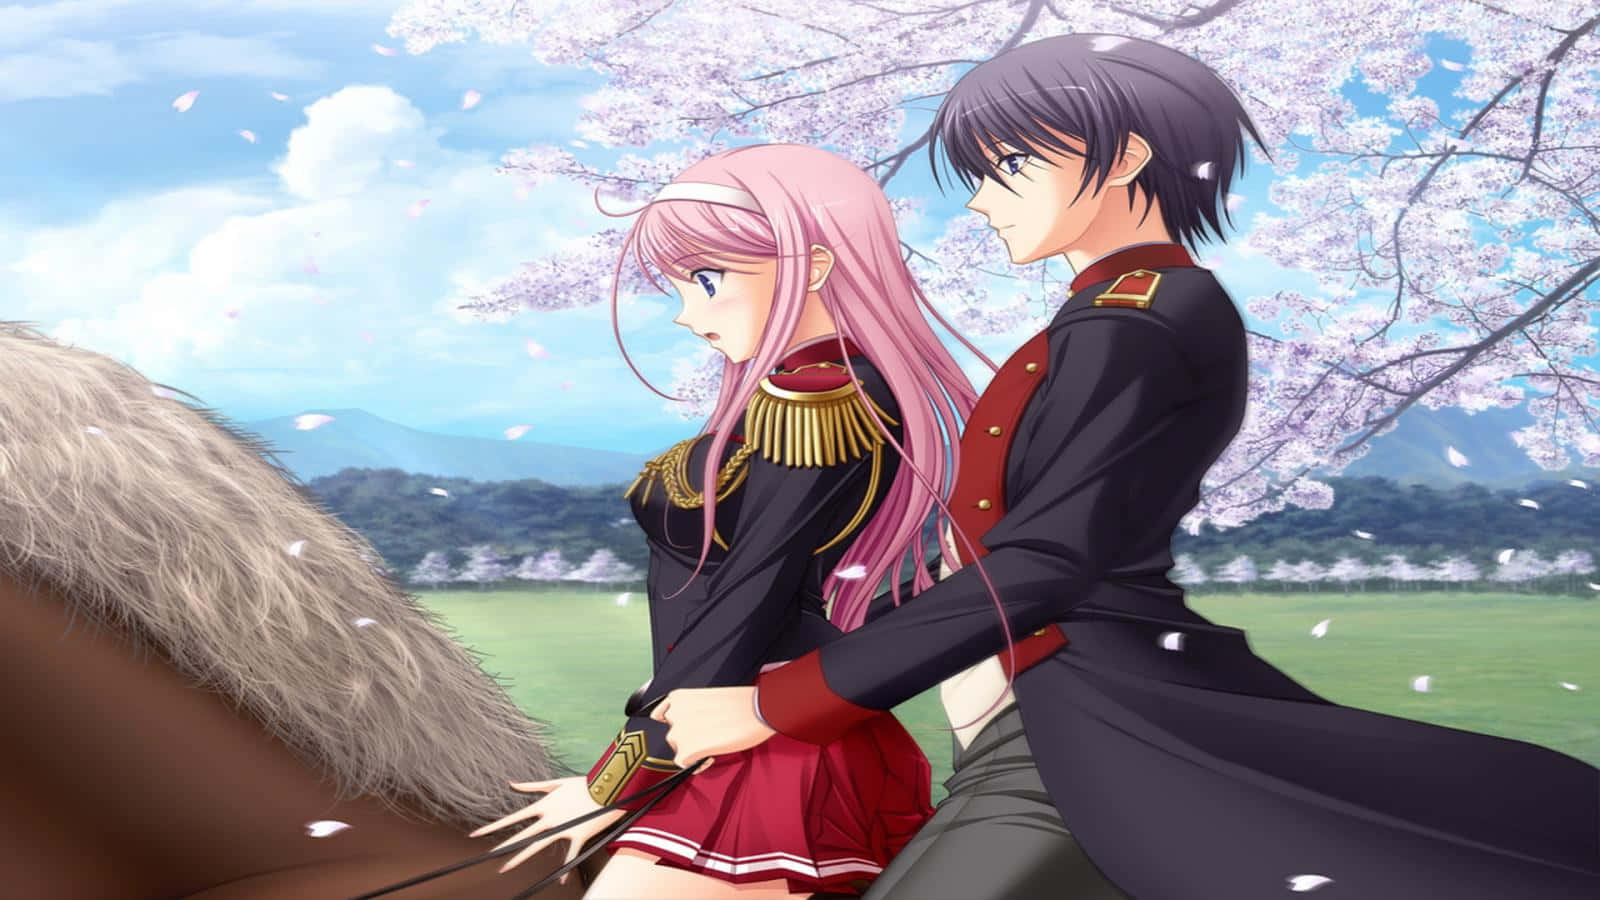 Kiraund Lacus Reiten Auf Einem Pferd In Einer Romantischen Anime-szene Wallpaper